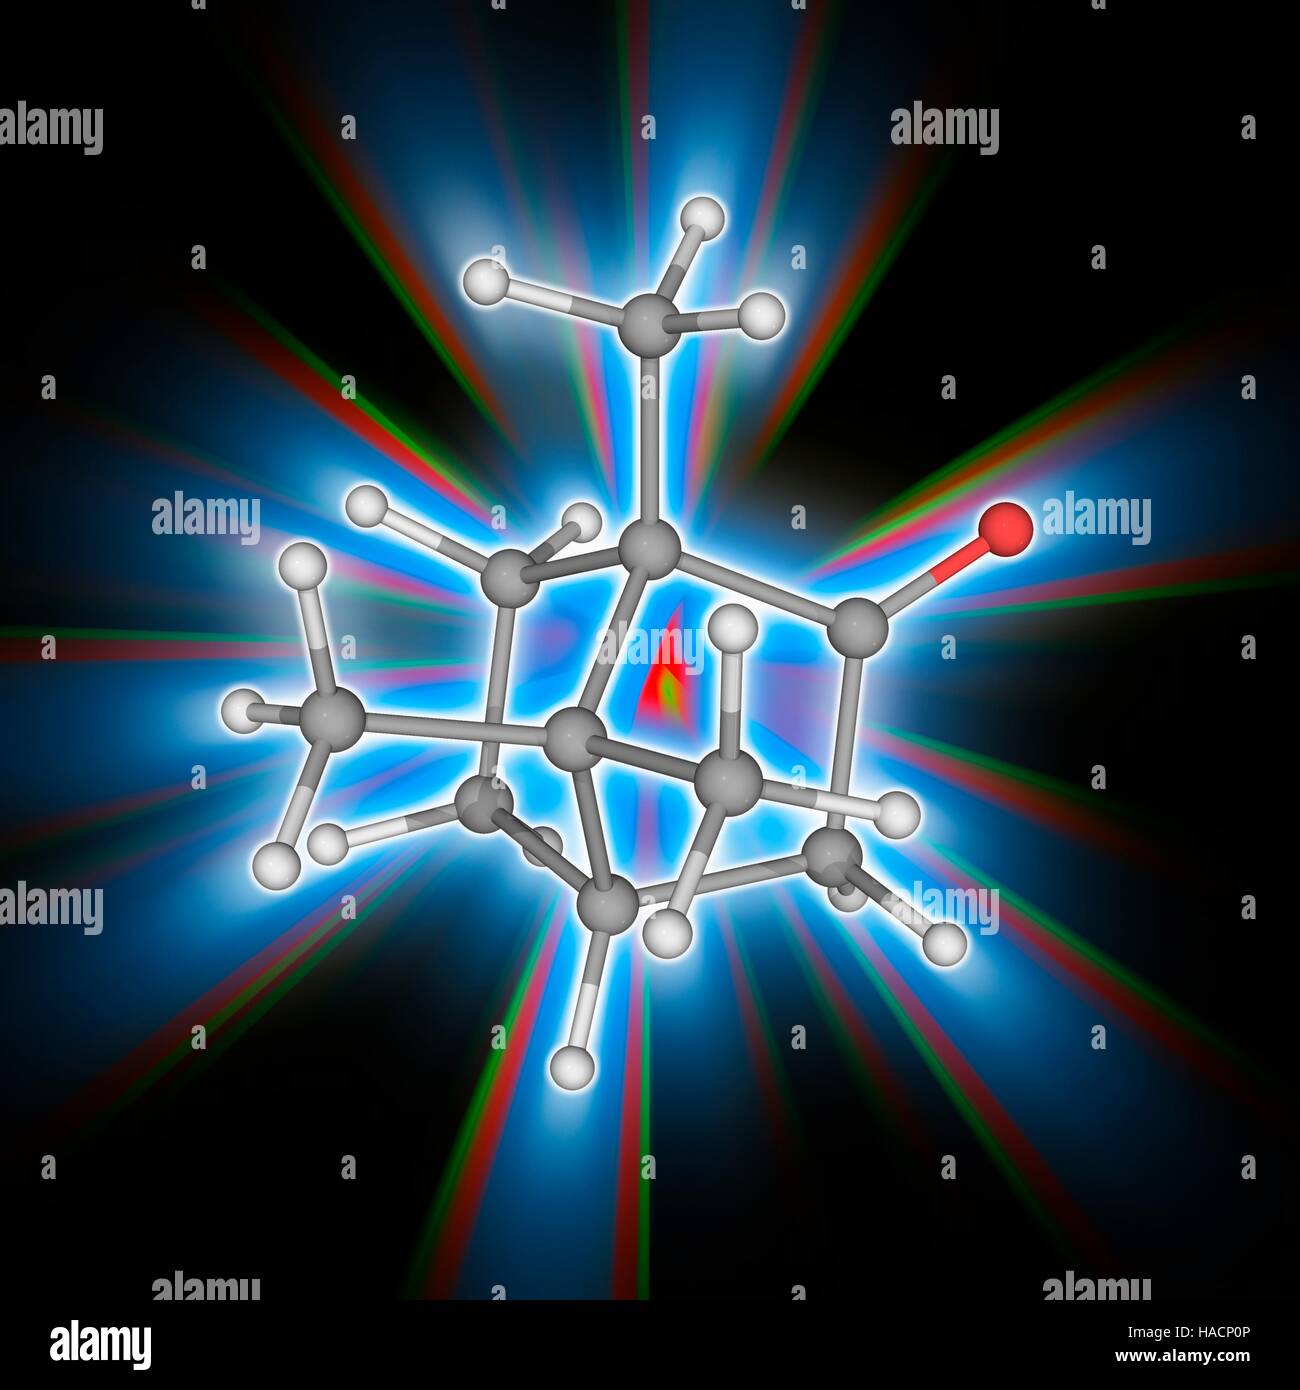 Canfora. Il modello molecolare del composto chimico organico canfora (C10.H16.o.). Classificato come un terpenoidi, si tratta di un solido ceroso di colore bianco o trasparente solido che ha un forte odore aromatico. È usato come un ingrediente di cottura, imbalsamazione fluido, per scopi medici e nelle cerimonie religiose. Gli atomi sono rappresentati da sfere e sono codificati a colori: carbonio (grigio), Idrogeno (bianco) e ossigeno (rosso). Illustrazione. Foto Stock